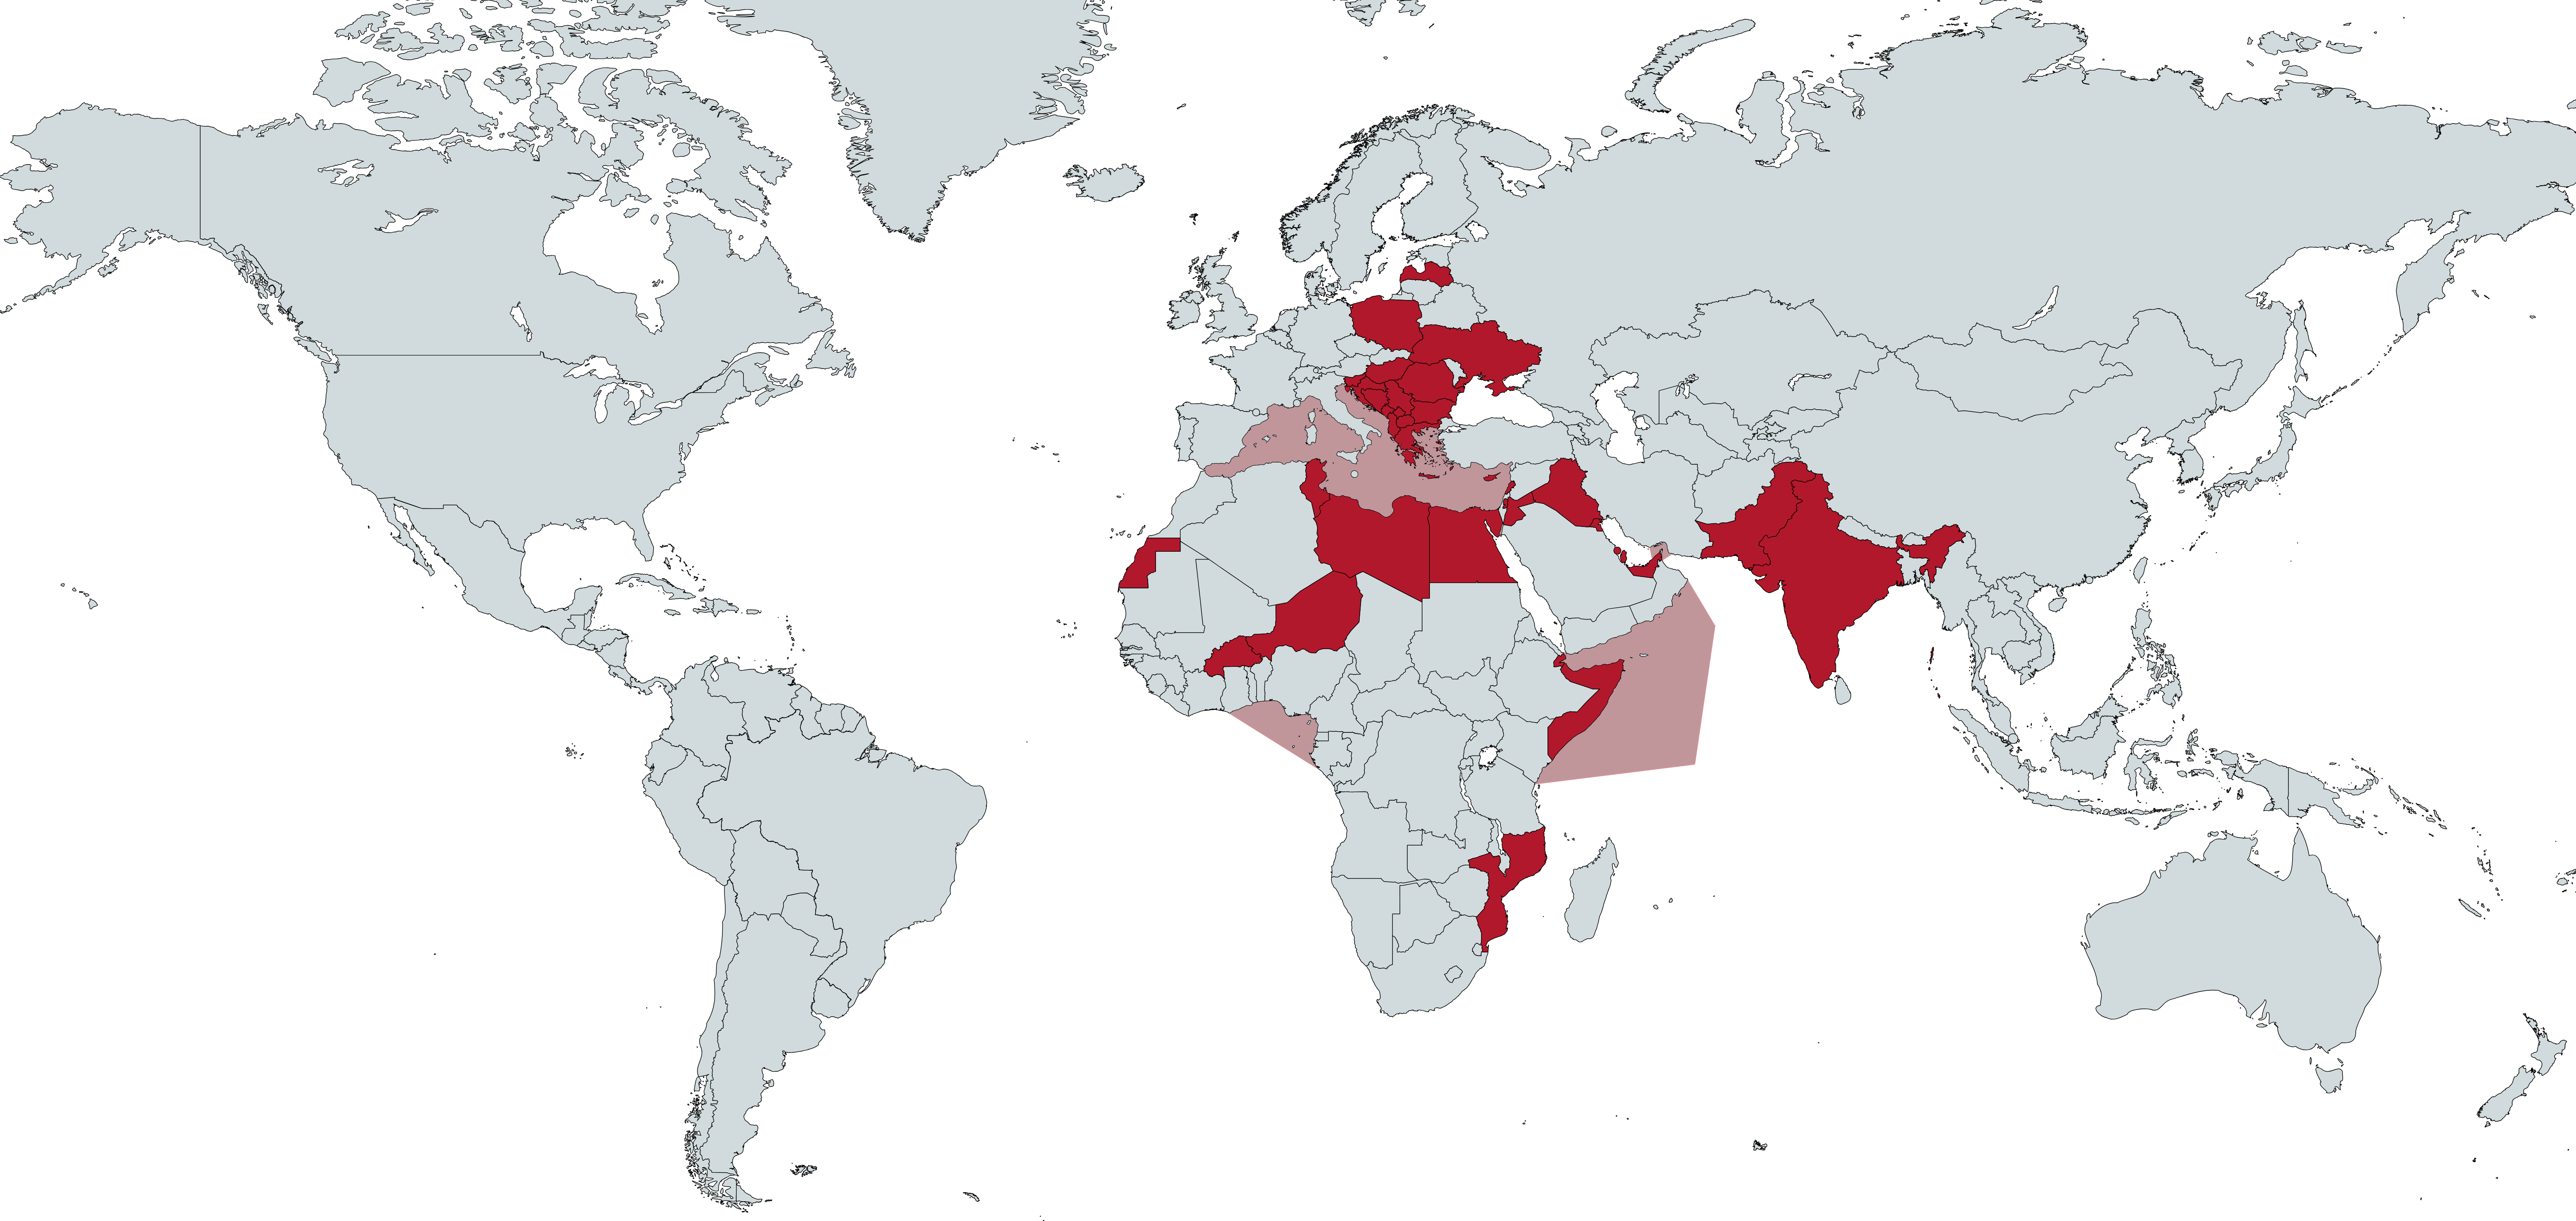 L'impegno militare italiano nel mondo. In rosso i Paesi dove l'Italia è impegnata in operazioni militari (non solo con la presenza sul terreno). In colore più chiaro le aree di operazioni navali.